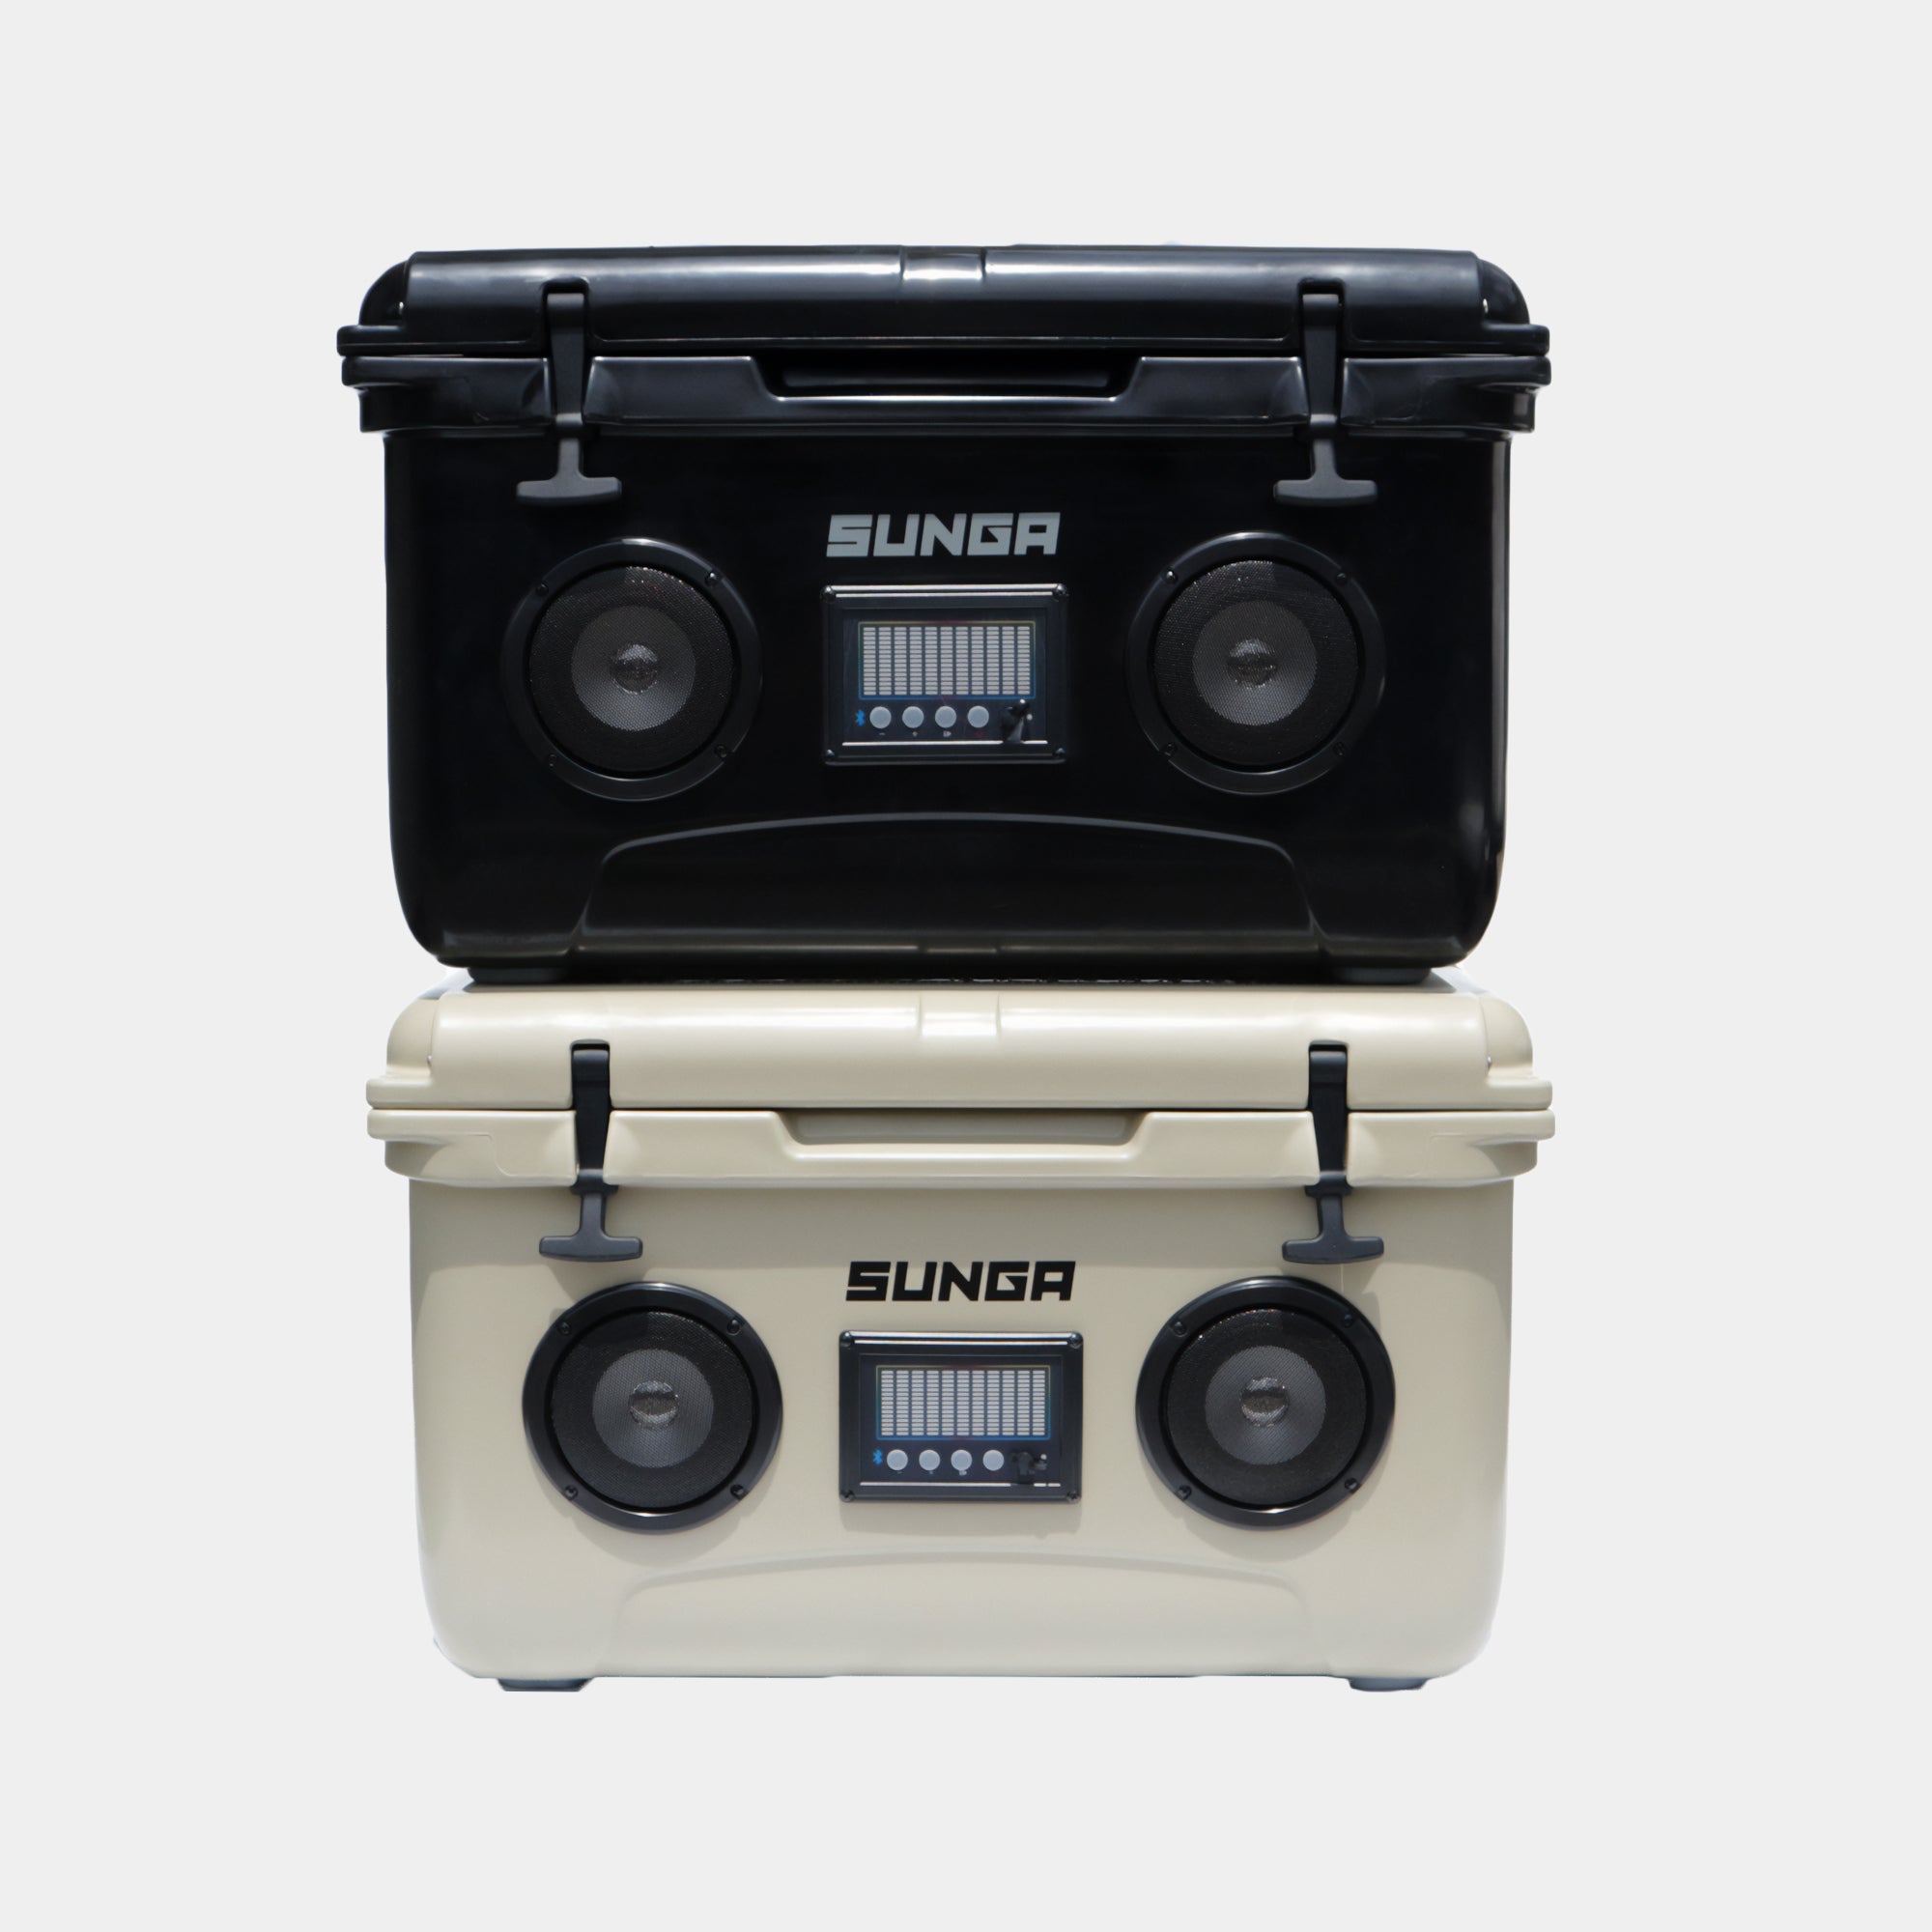 SUNGA Bluetooth スピーカークーラーボックス 45L ブラック